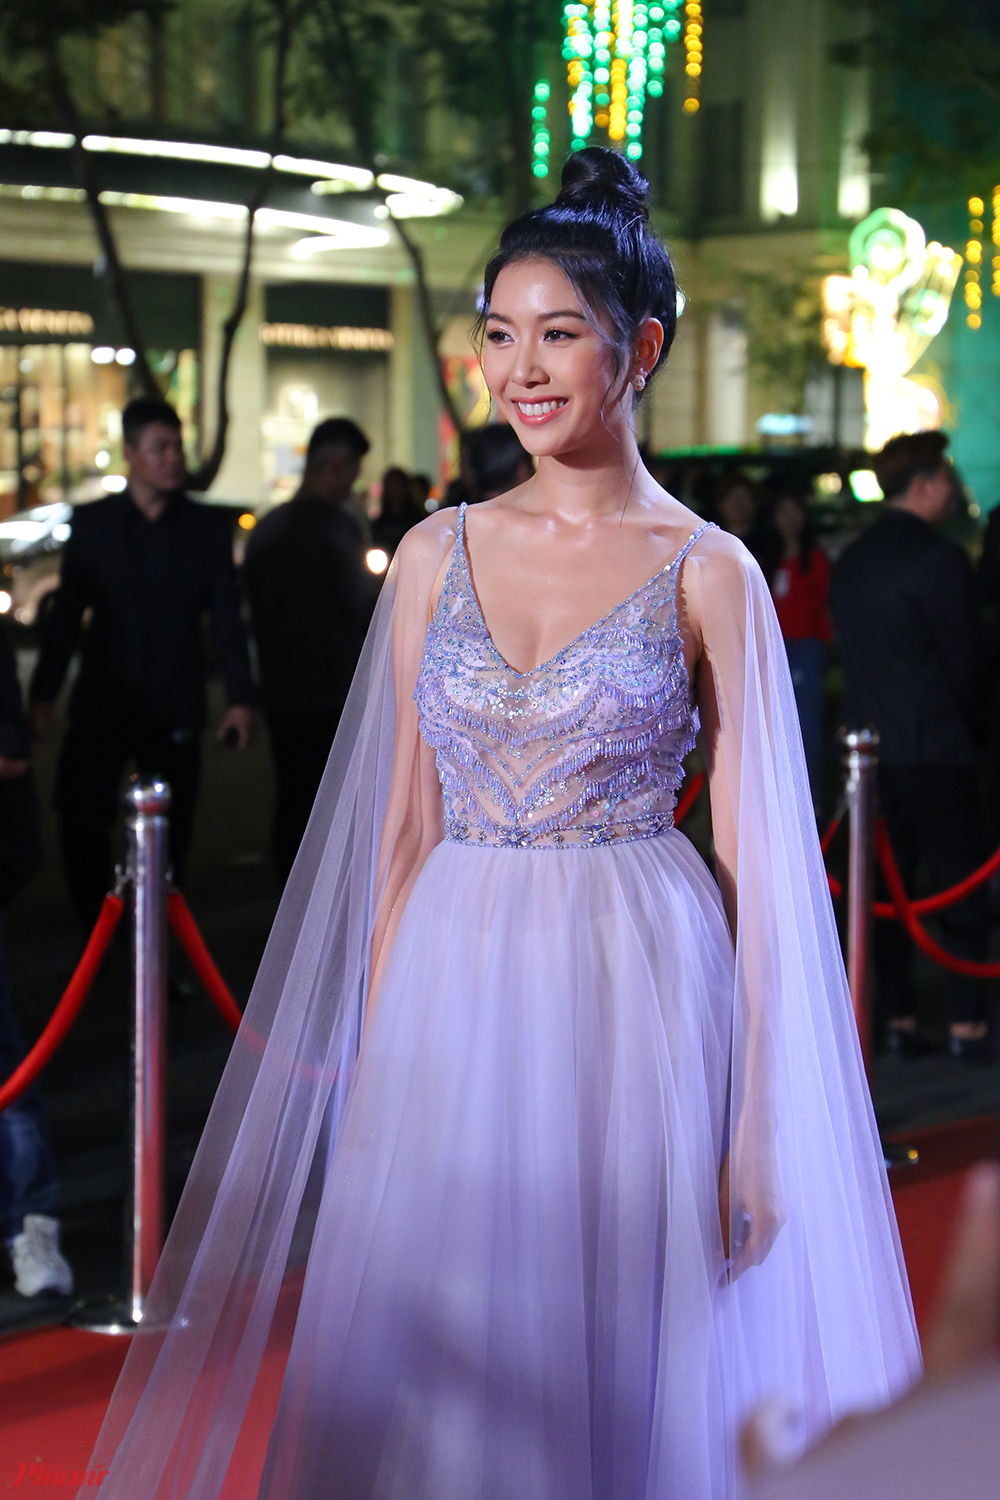 Á hậu Thuý Vân diện váy màu tím nhạt ngọt ngào, nhưng không kém phần gợi cảm bởi chất liệu mỏng manh. Cô đảm nhận vai trò MC cho lễ trao giải.